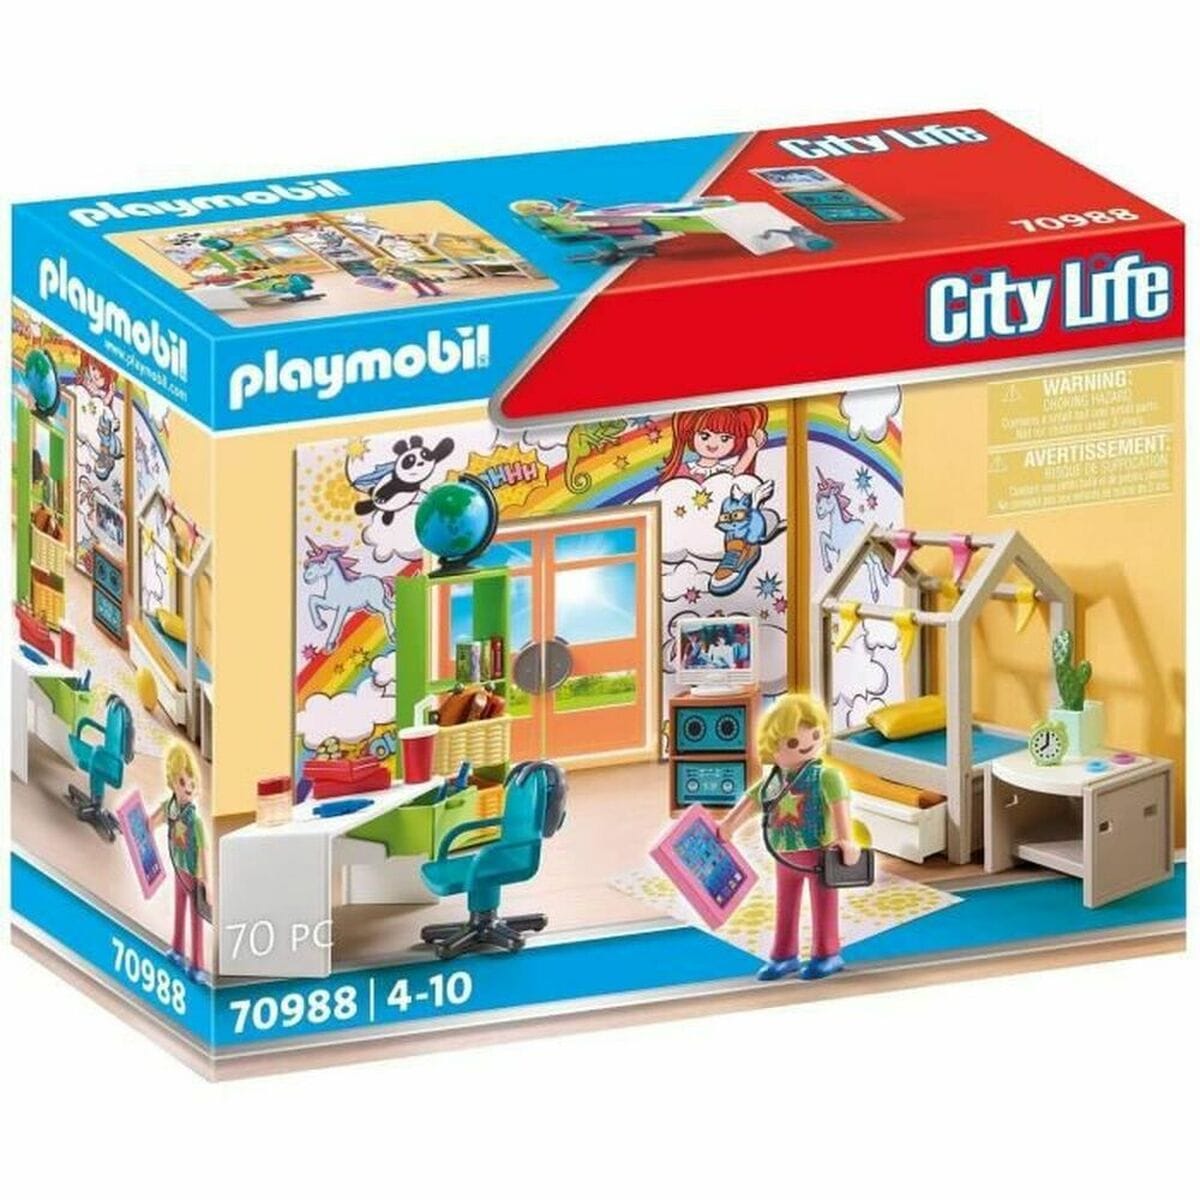 Playmobil Spielzeug | Kostüme > Spielzeug und Spiele > Weiteres spielzeug Playset Playmobil 70988 Raum Jugendliche